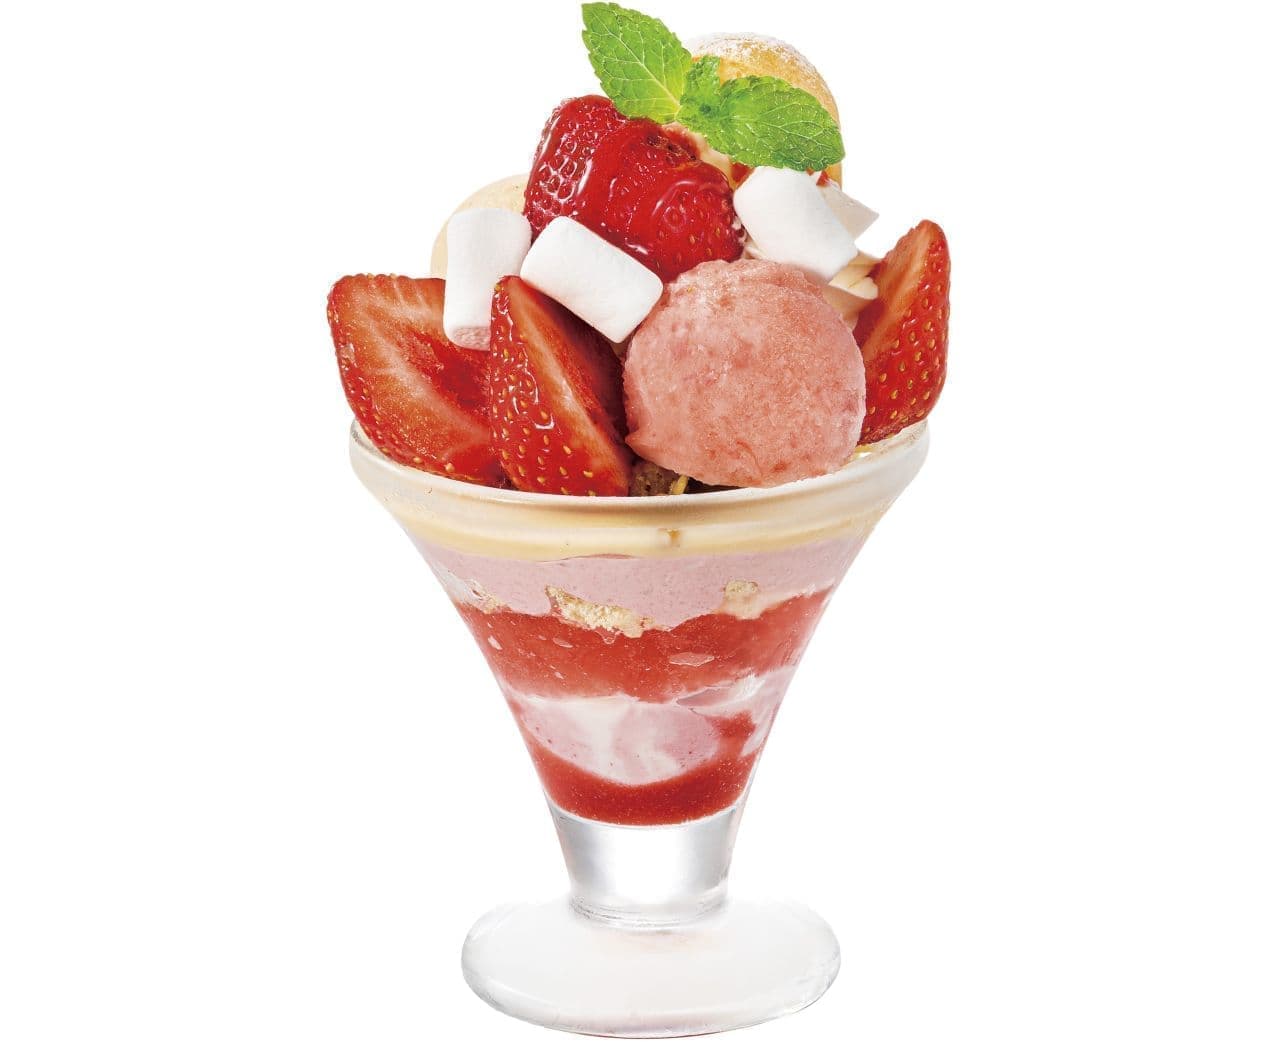 Denny's "Amaou Strawberry Choux Mini Parfait